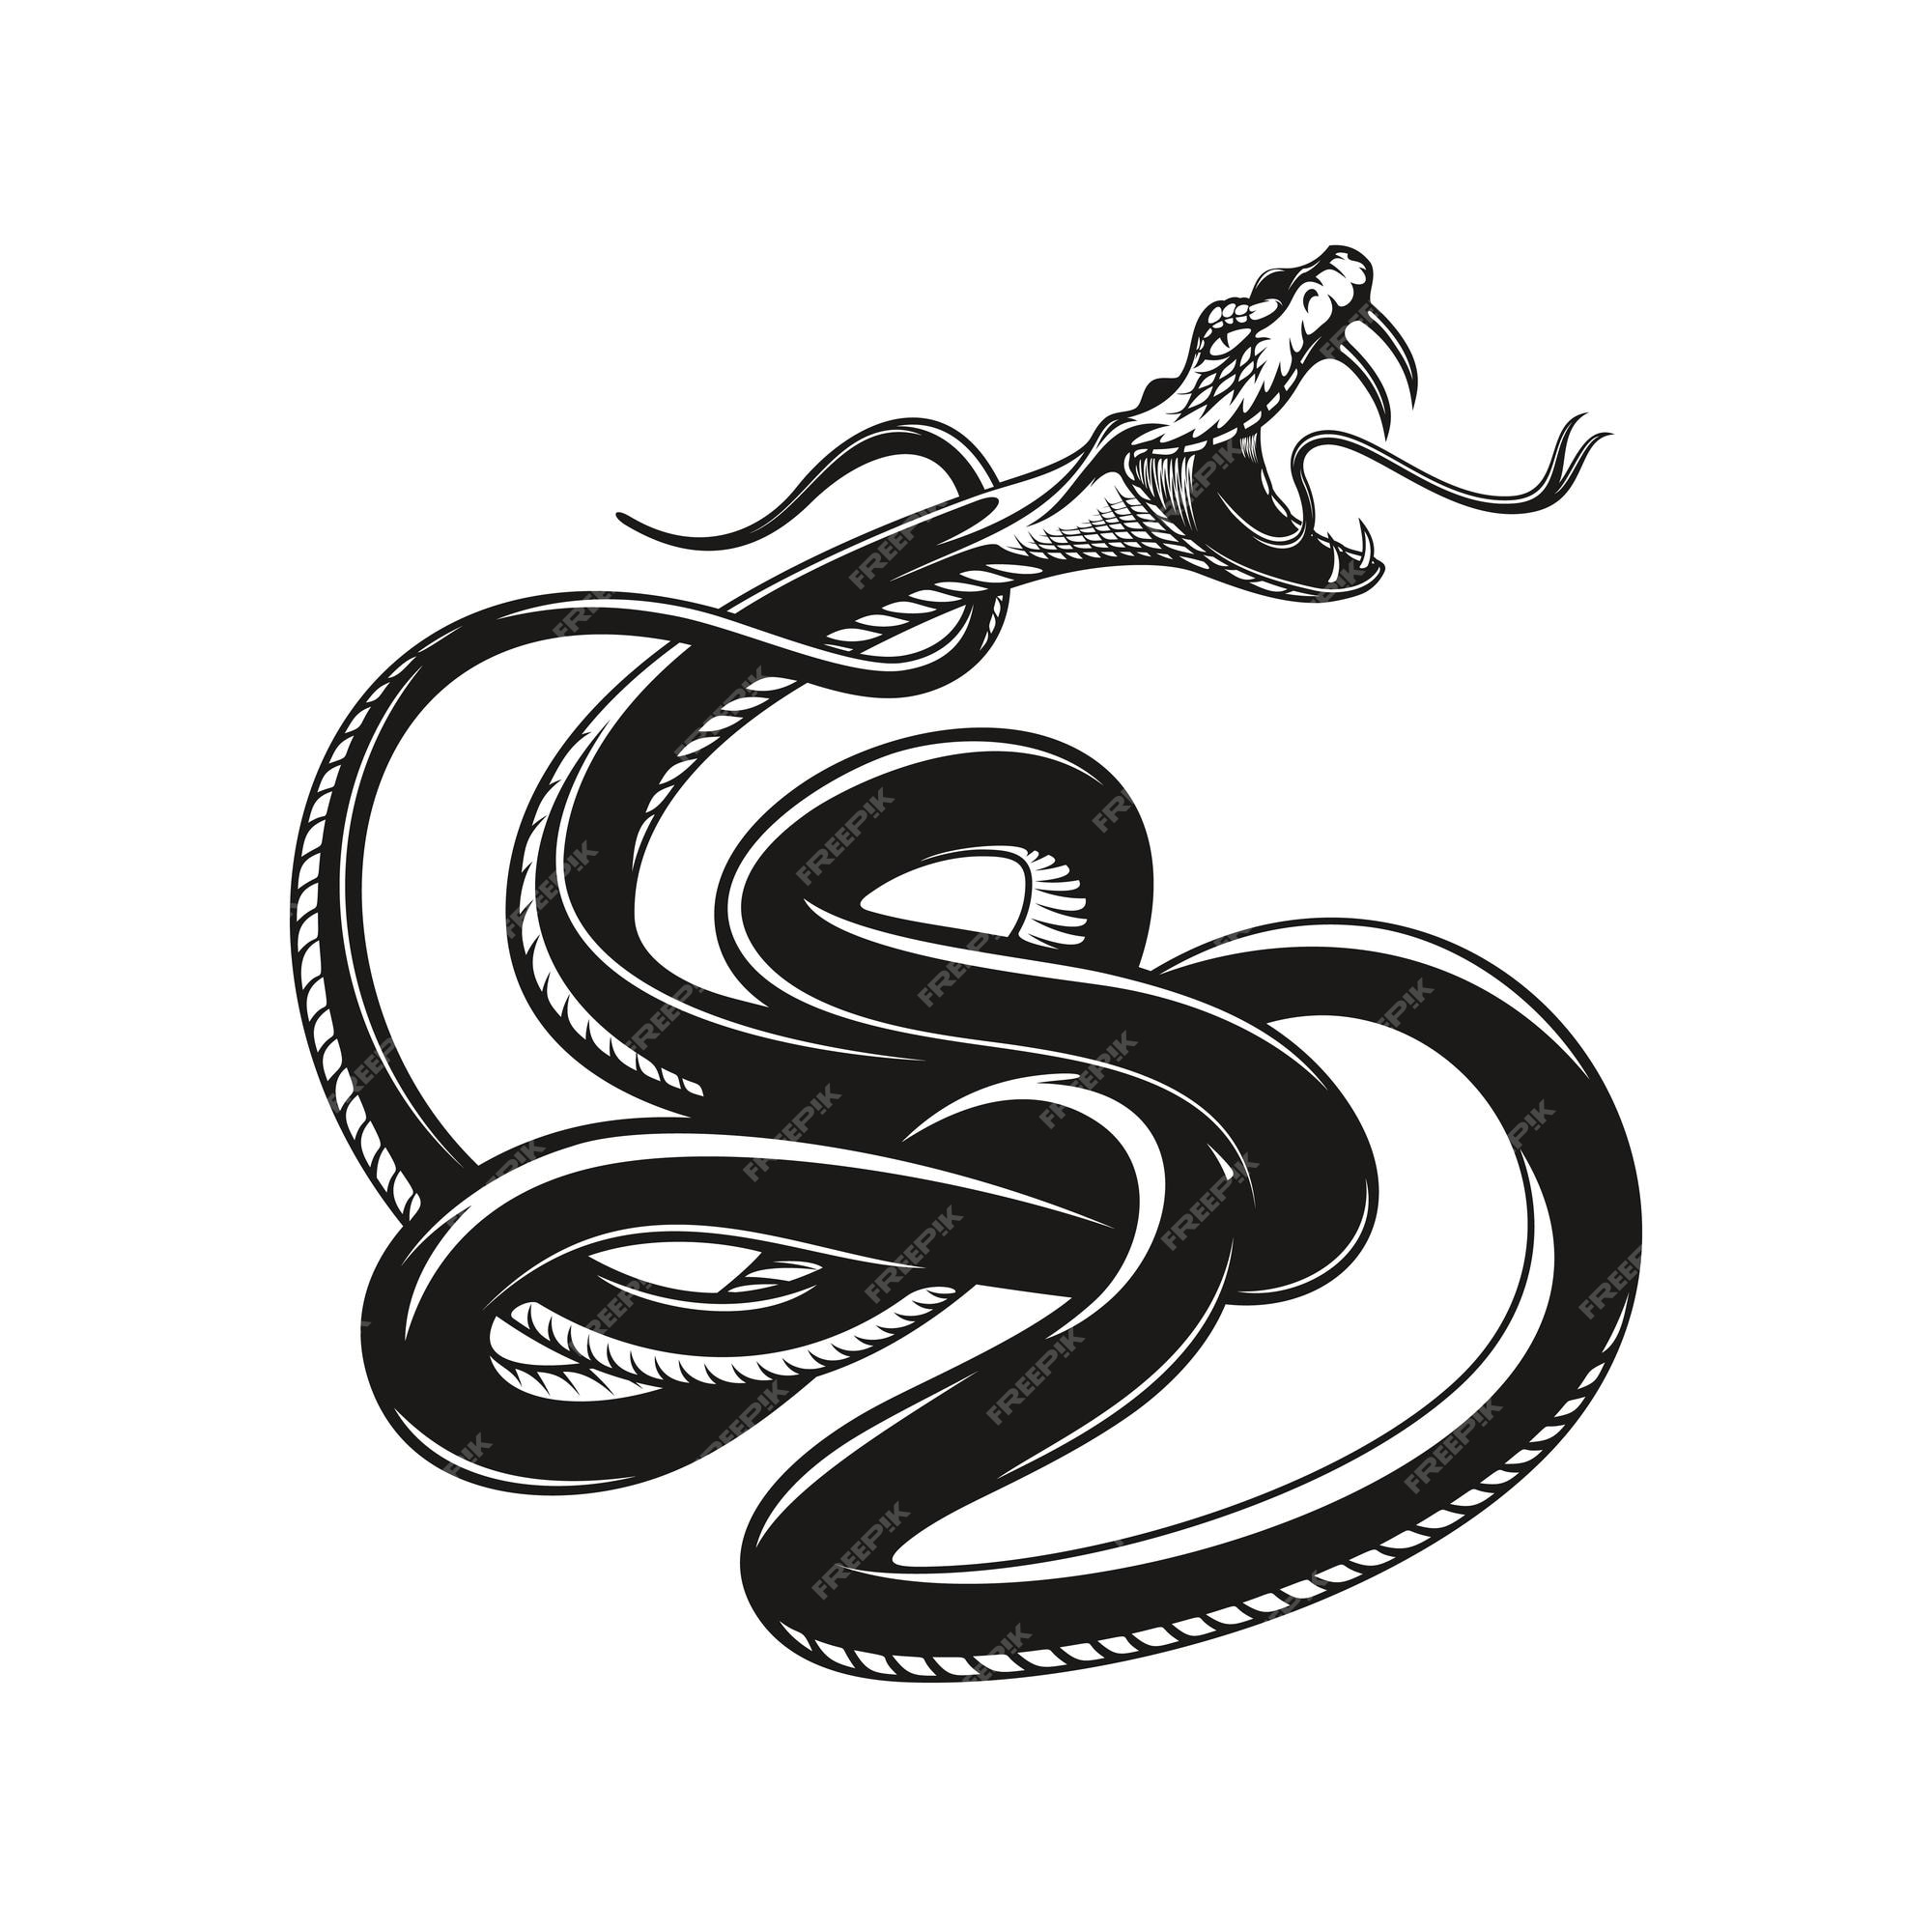 Với thiết kế chân thực và sắc nét về rắn, đây sẽ là một trang trí đầy mạnh mẽ cho cánh tay của bạn.